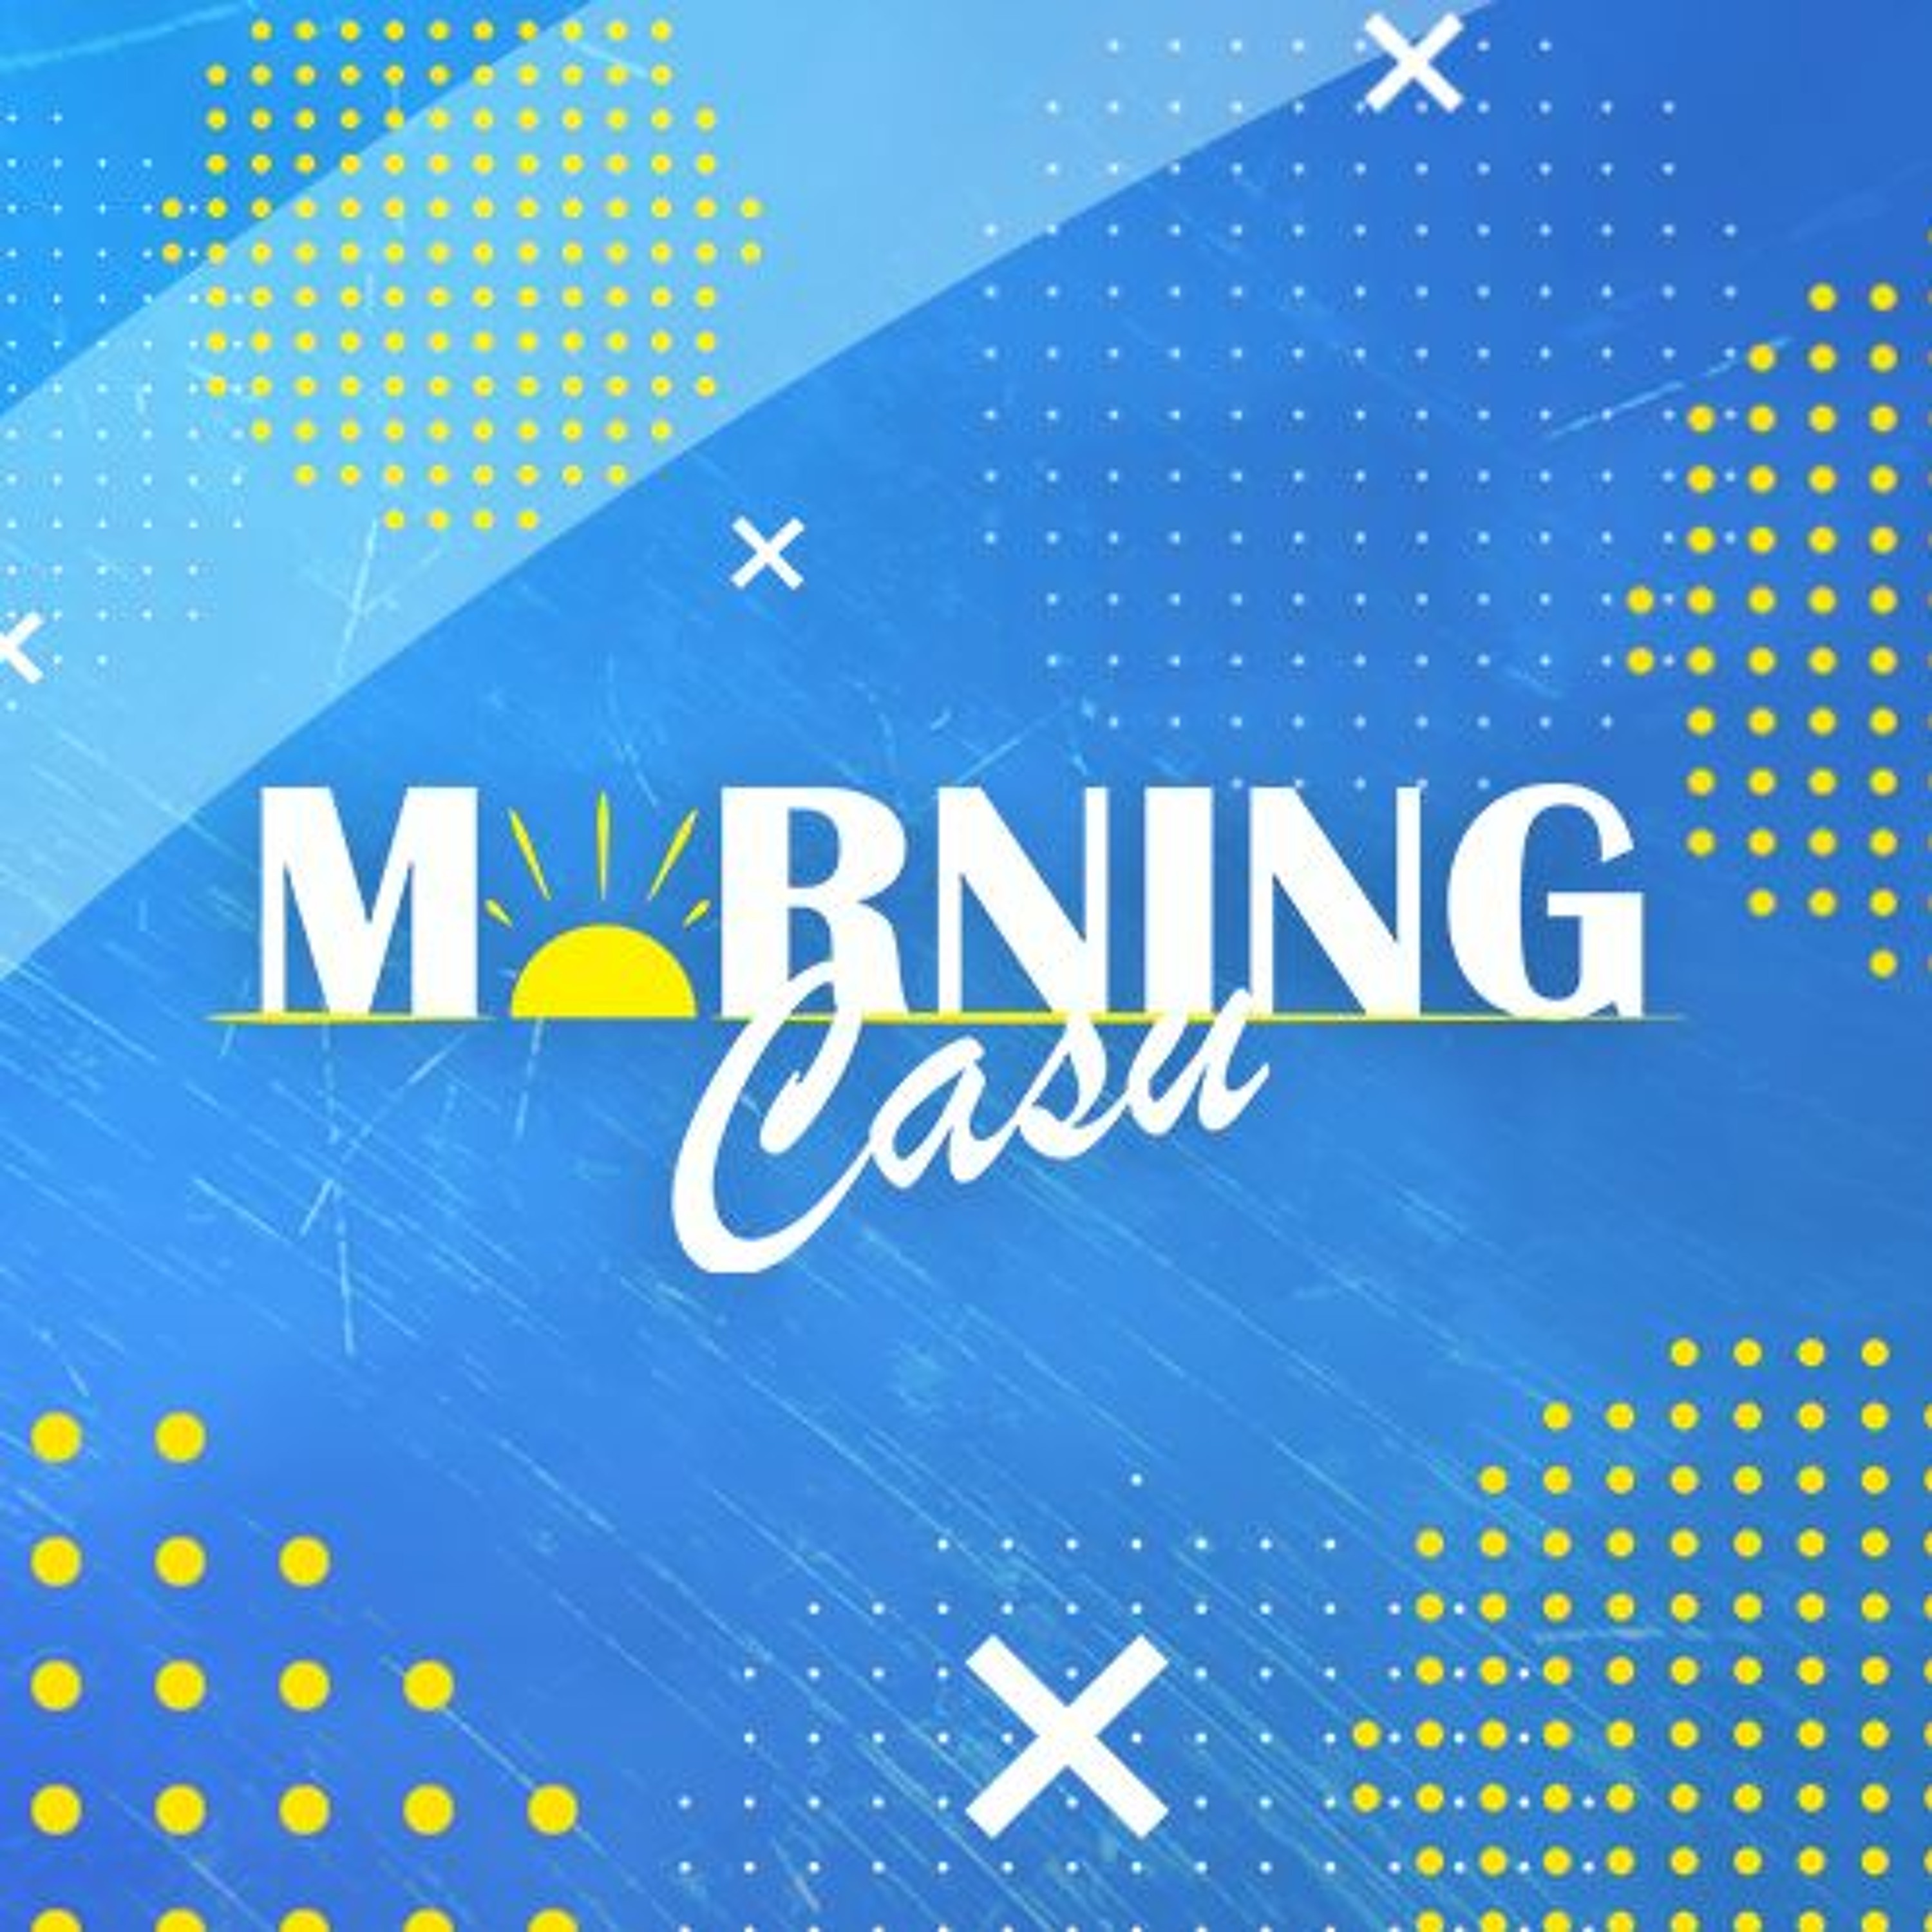 Morning Casu – Ozstrik3r (04-06-2020)